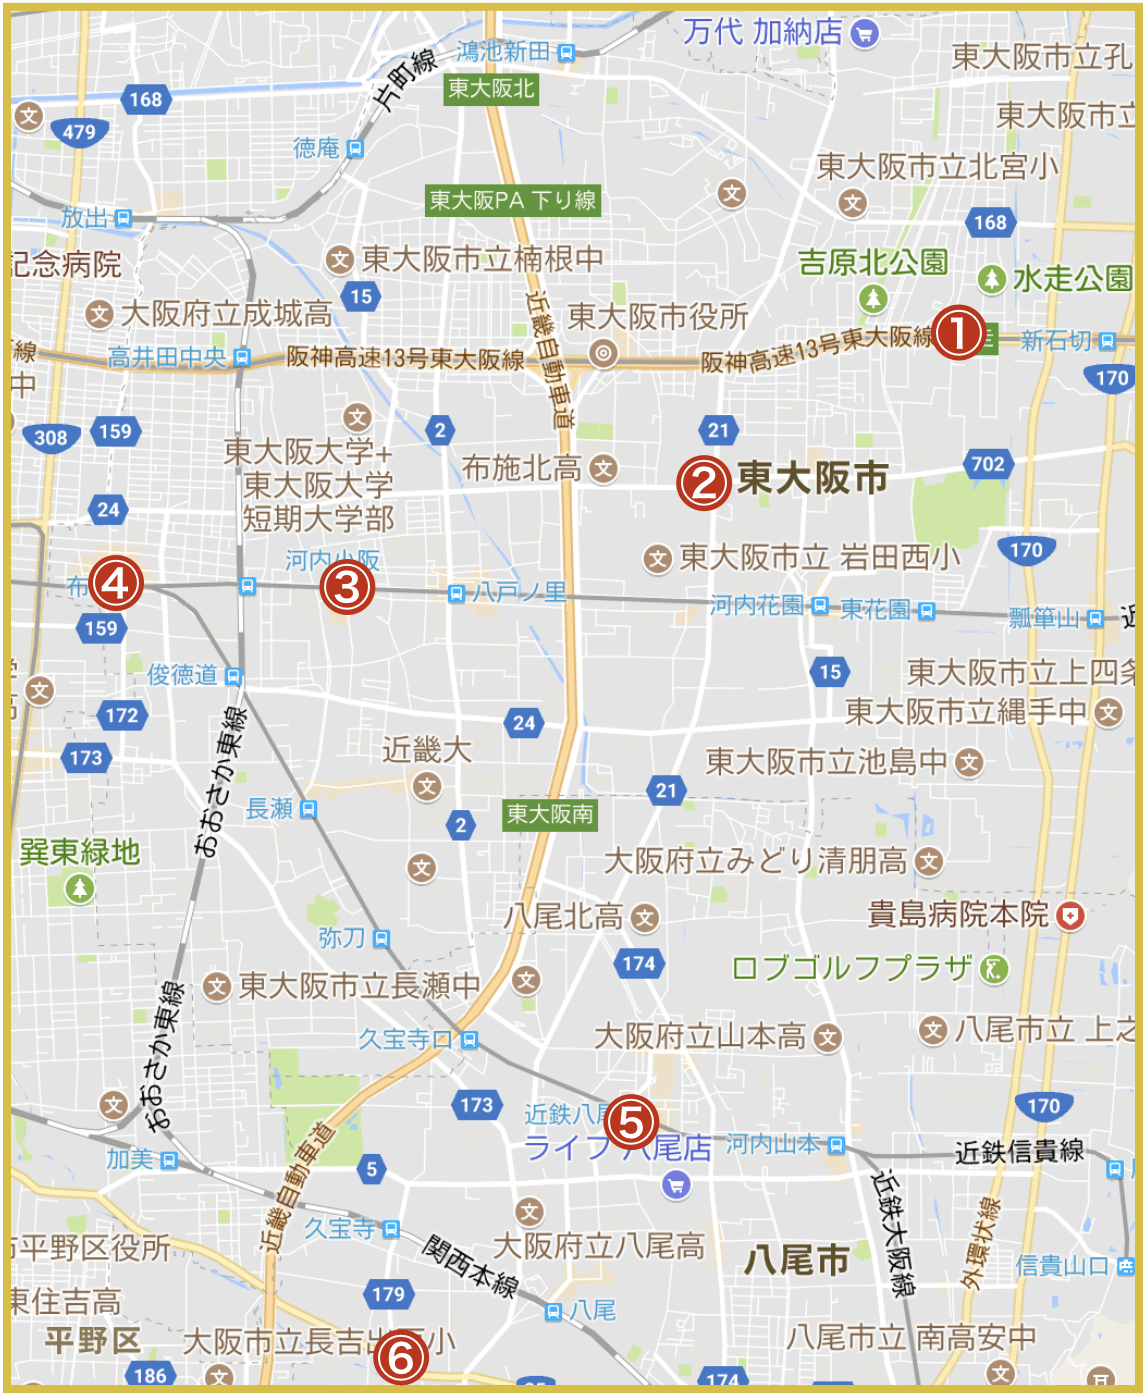 大阪府中河内地域にあるアイフル店舗・ATMの位置